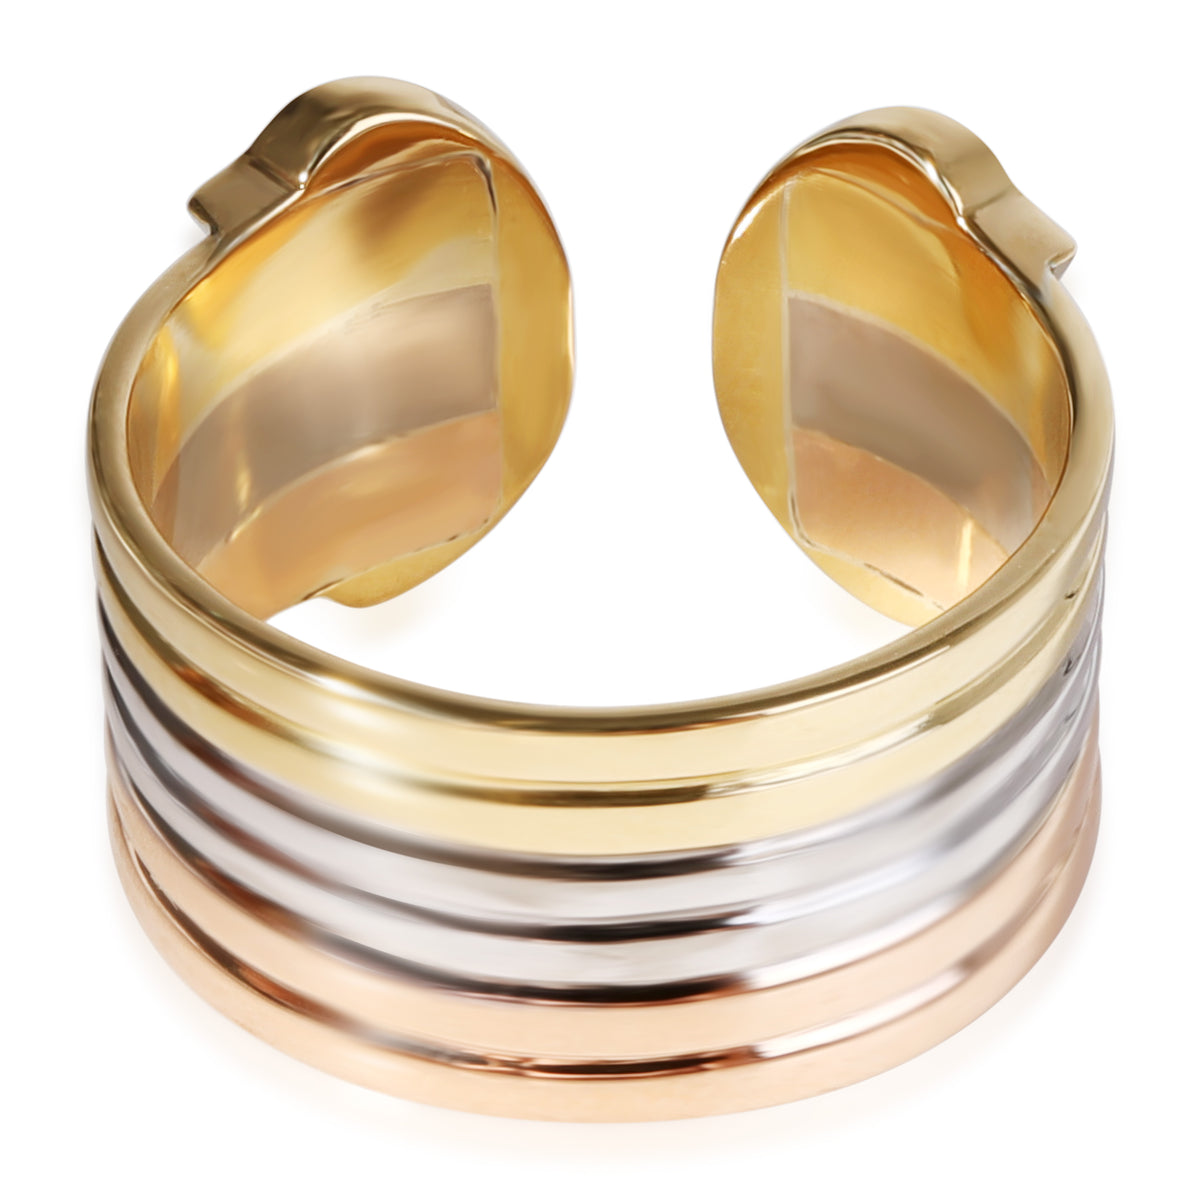 Vintage C De Cartier Ring in 18K Three Tone Gold